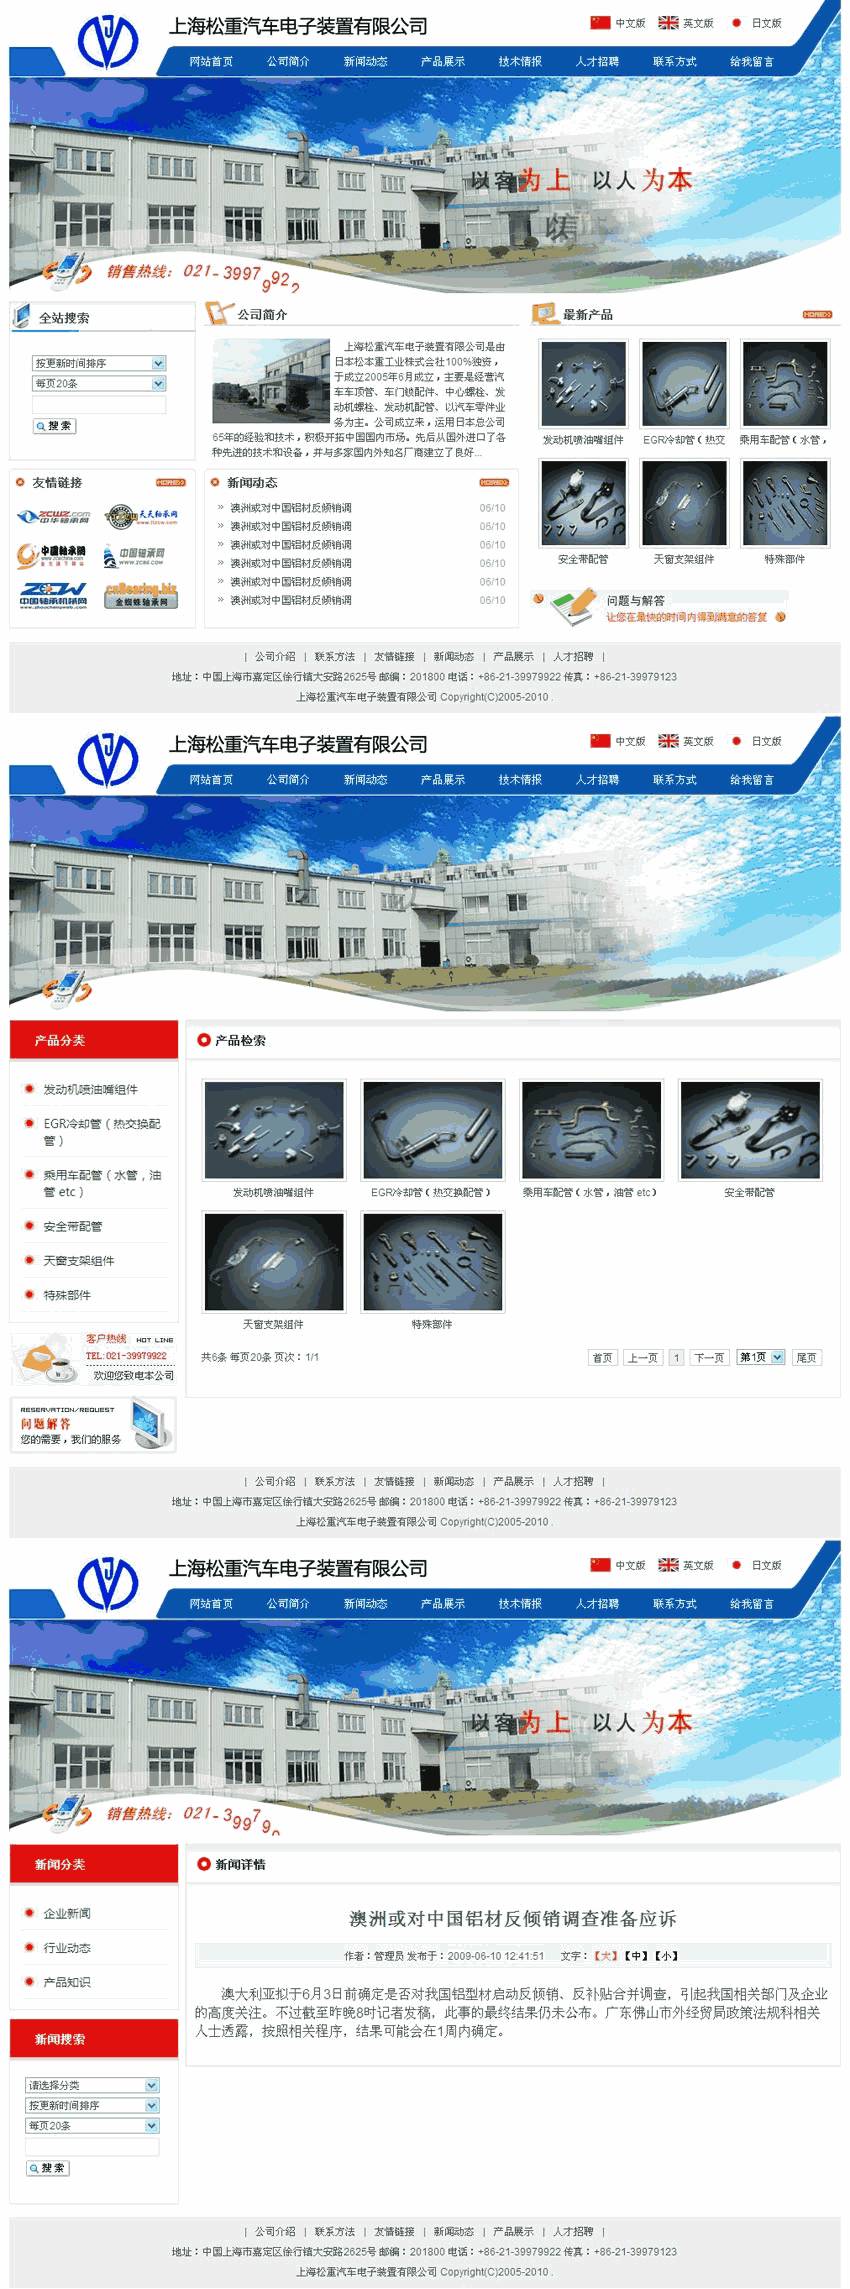 蓝色上海松重汽车电子配件公司网站WordPress模板含手机站演示图